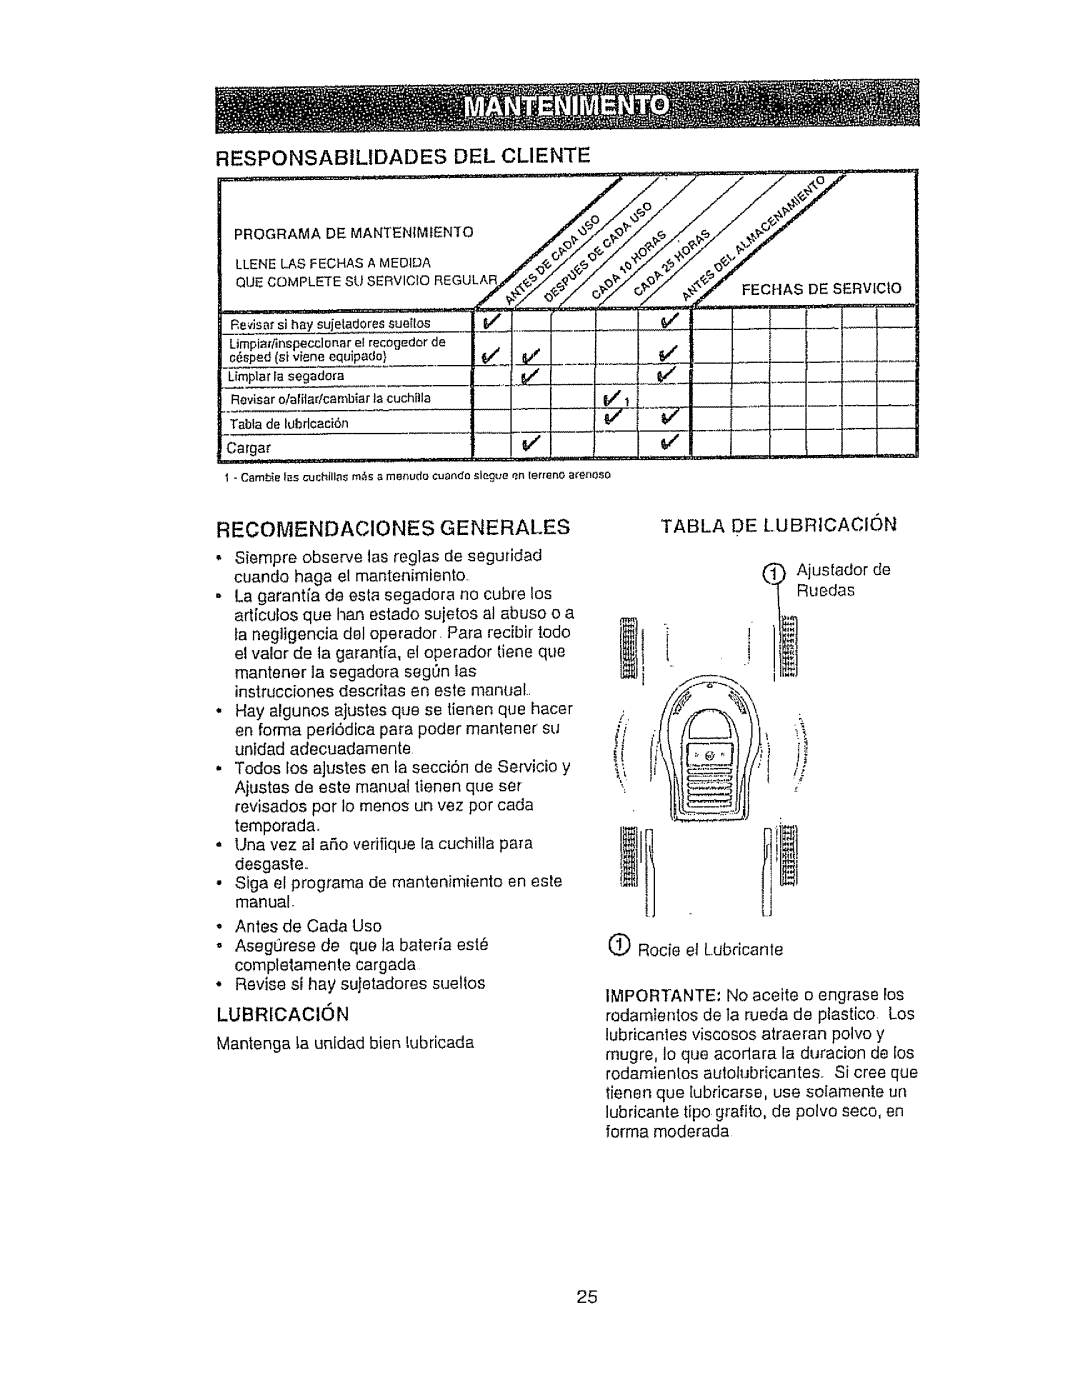 Craftsman 917.386410 owner manual TEo,,AsoEs ov,c, Responsabilidades Del Cliente, Recomendaciones Generales 